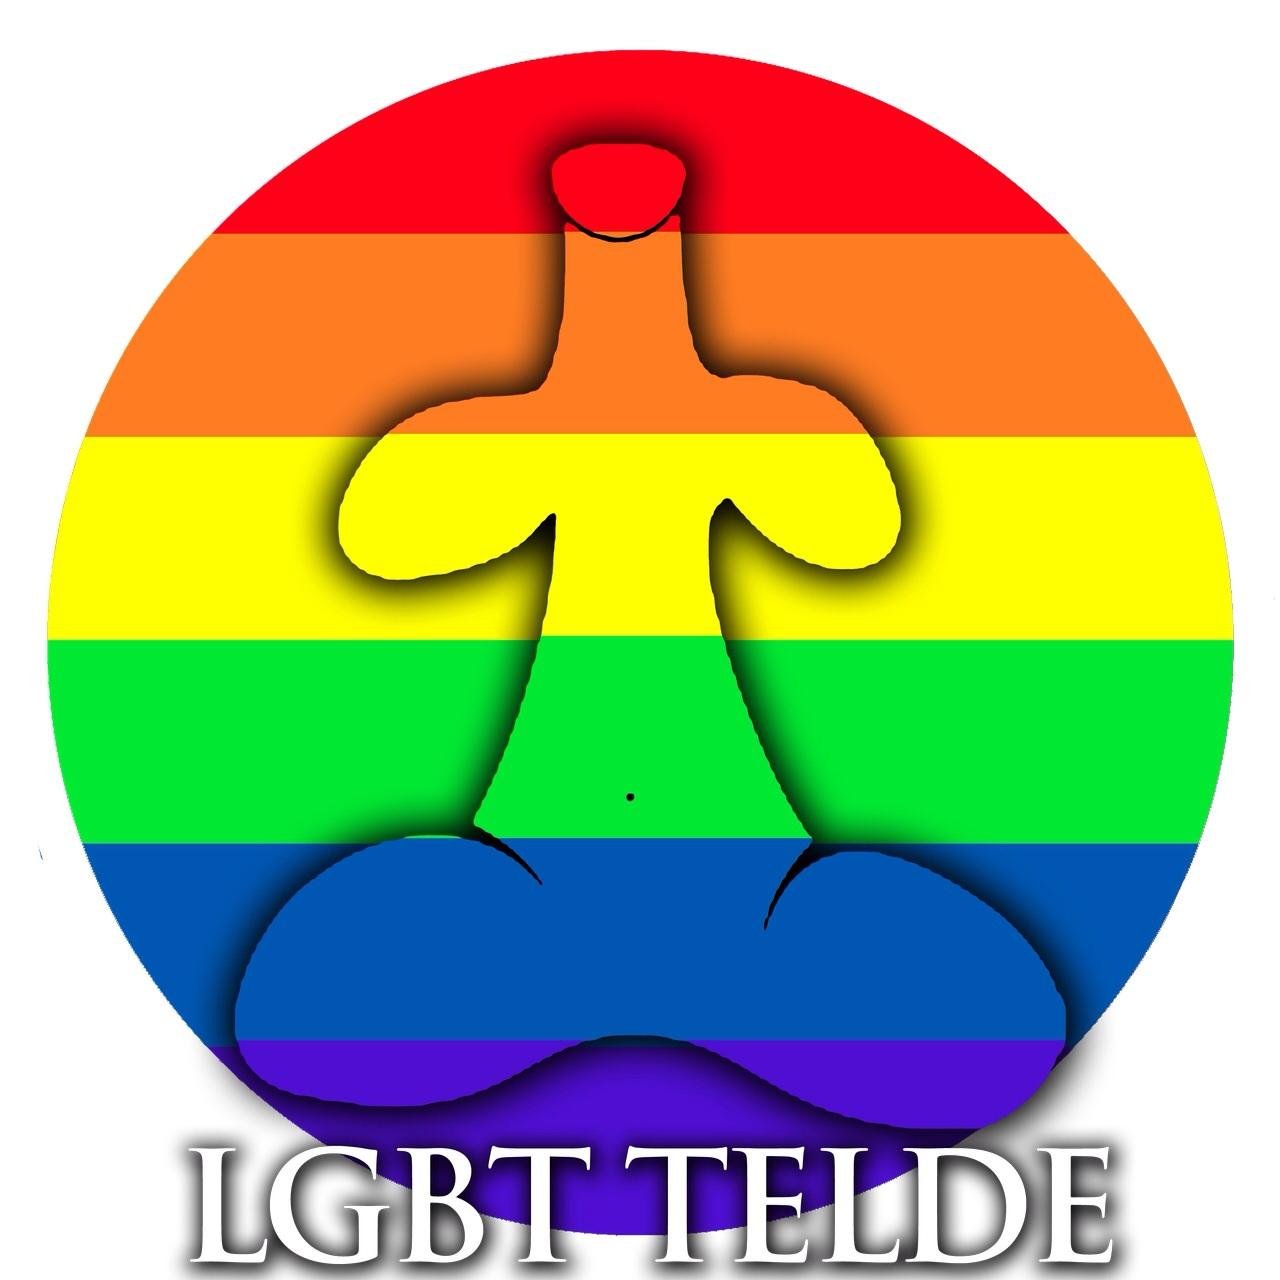 Primera asociación LGTB de Telde, abierta y plural. Orgullosos de ser quienes somos...